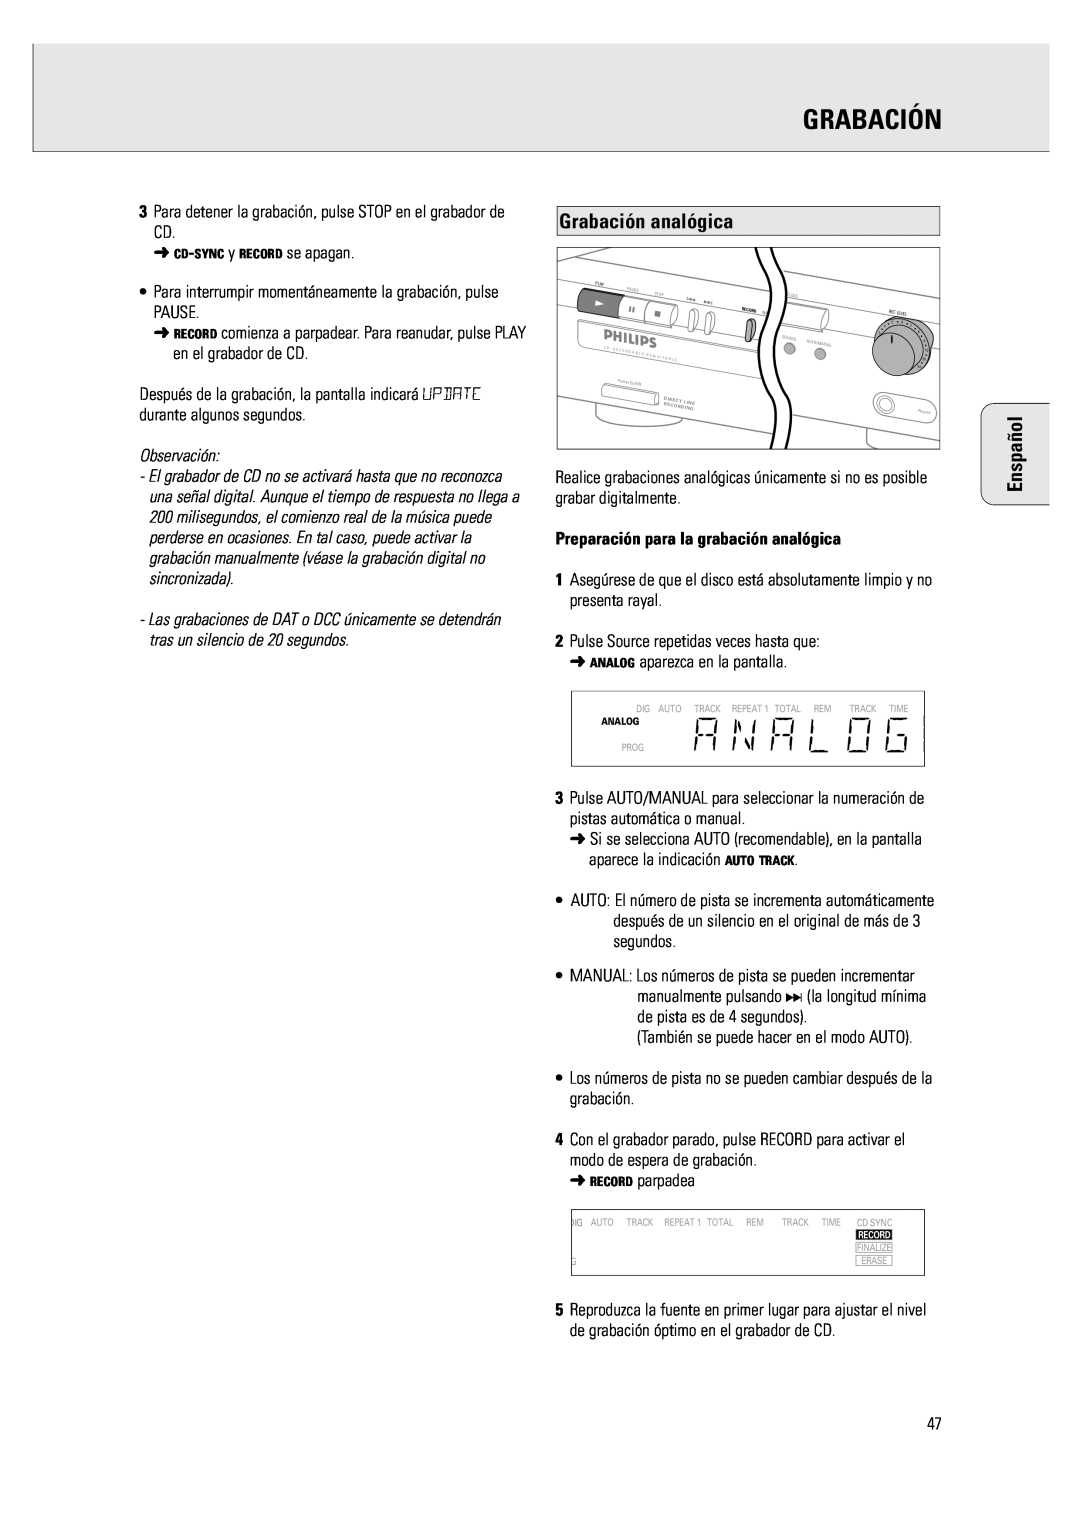 Philips CDR 760 manual Grabación analógica, Enspañol, Preparación para la grabación analógica 